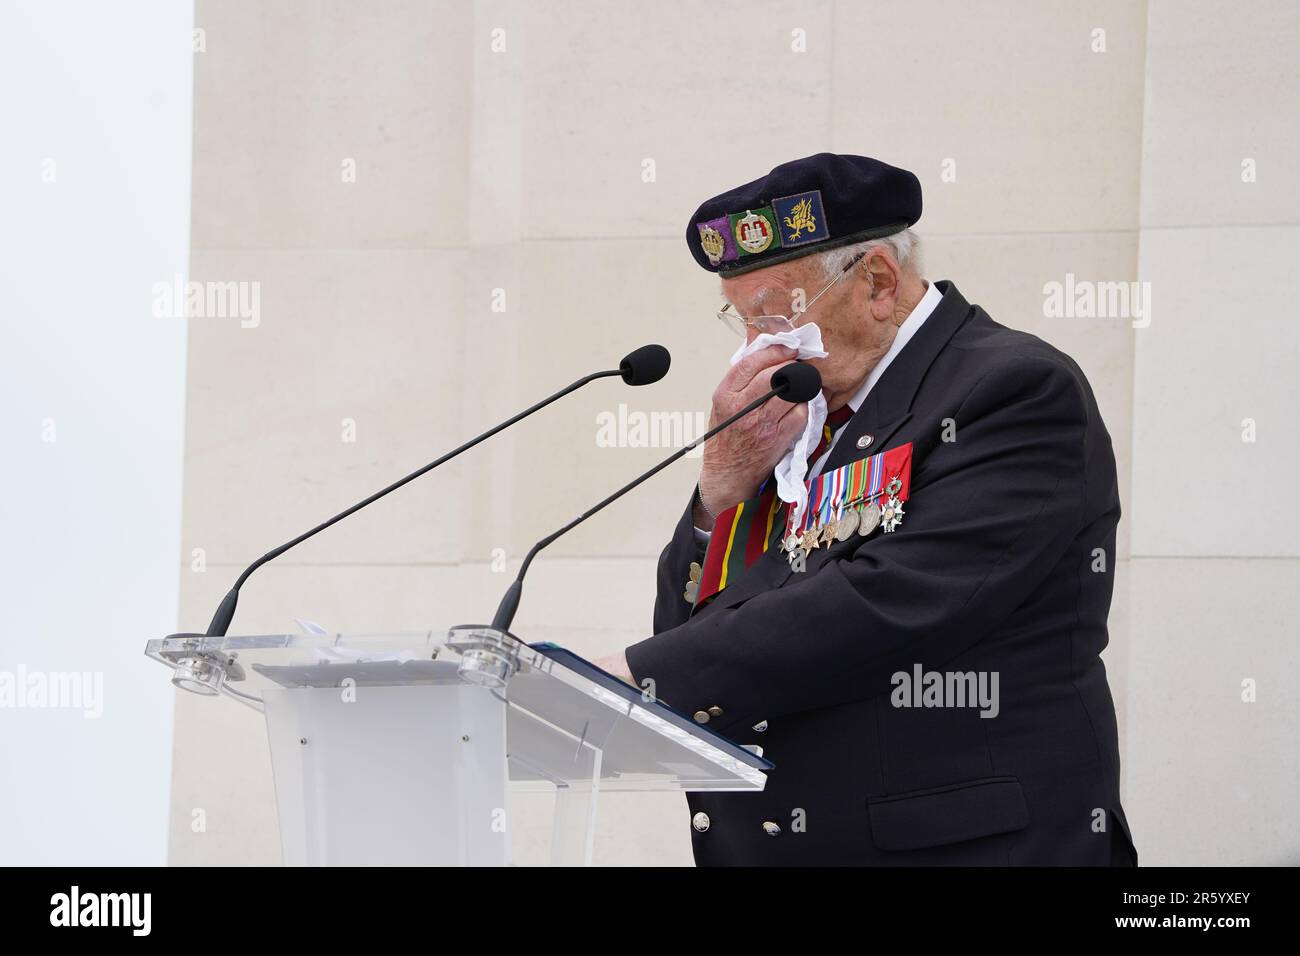 Der D-Day-Veteran Ken Hay weint Tränen weg, während er anlässlich des Royal British Legion (RBL) Service of Remembrance anlässlich des 79. Jahrestages der D-Day-Landungen am British Normandie Memorial in Ver-sur-Mer, Normandie, Frankreich, spricht. Der Dienst erinnert an die 22.442 Soldaten und Frauen aus 38 verschiedenen Ländern, die am D-Day und während der Schlacht in der Normandie im Sommer 1944 unter britischem Kommando starben. Foto: Dienstag, 6. Juni 2023. Stockfoto